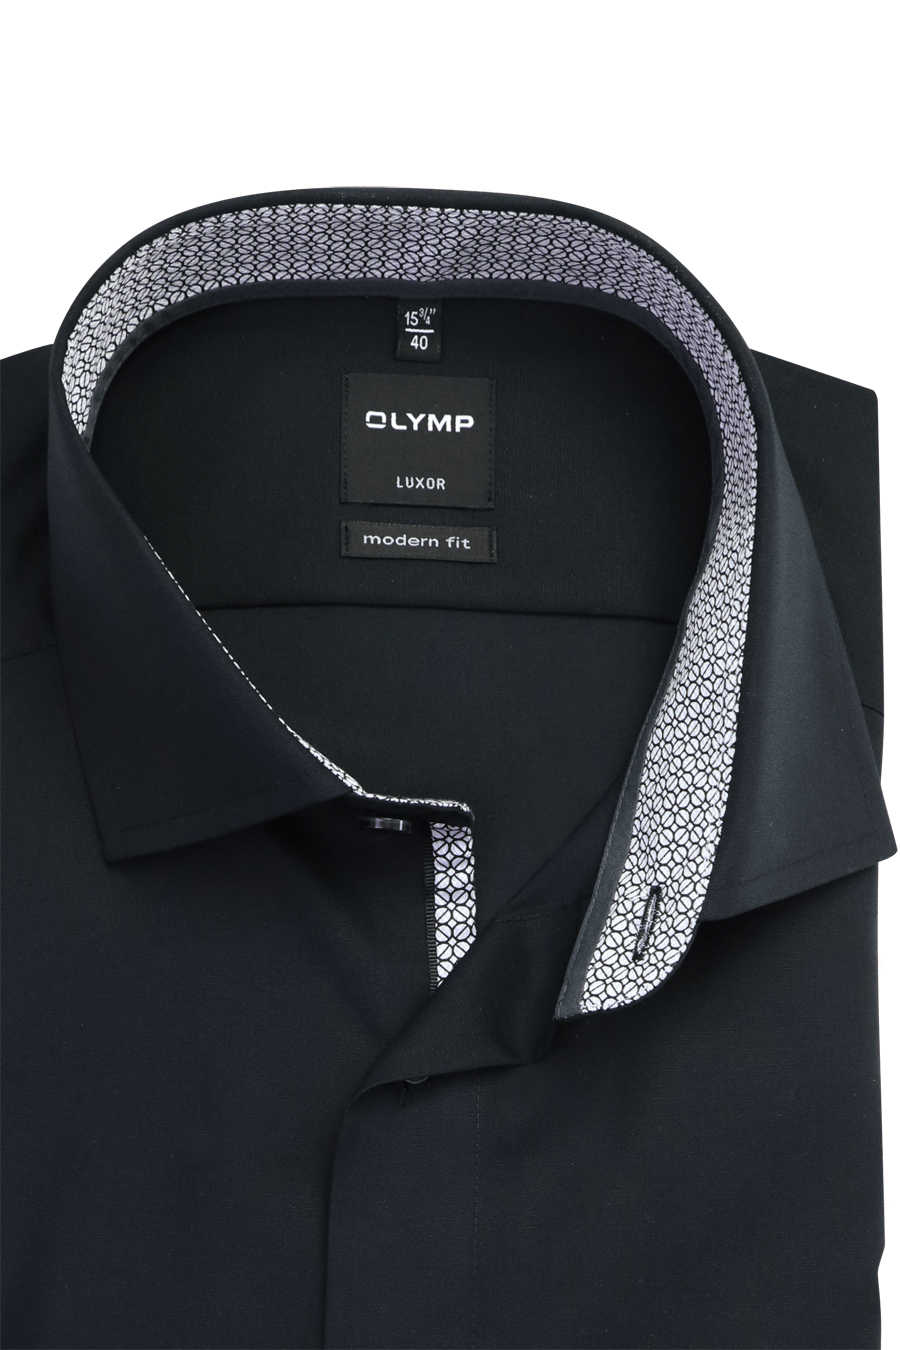 OLYMP Luxor modern Arm Haifischkragen Hemd schwarz extra langer fit